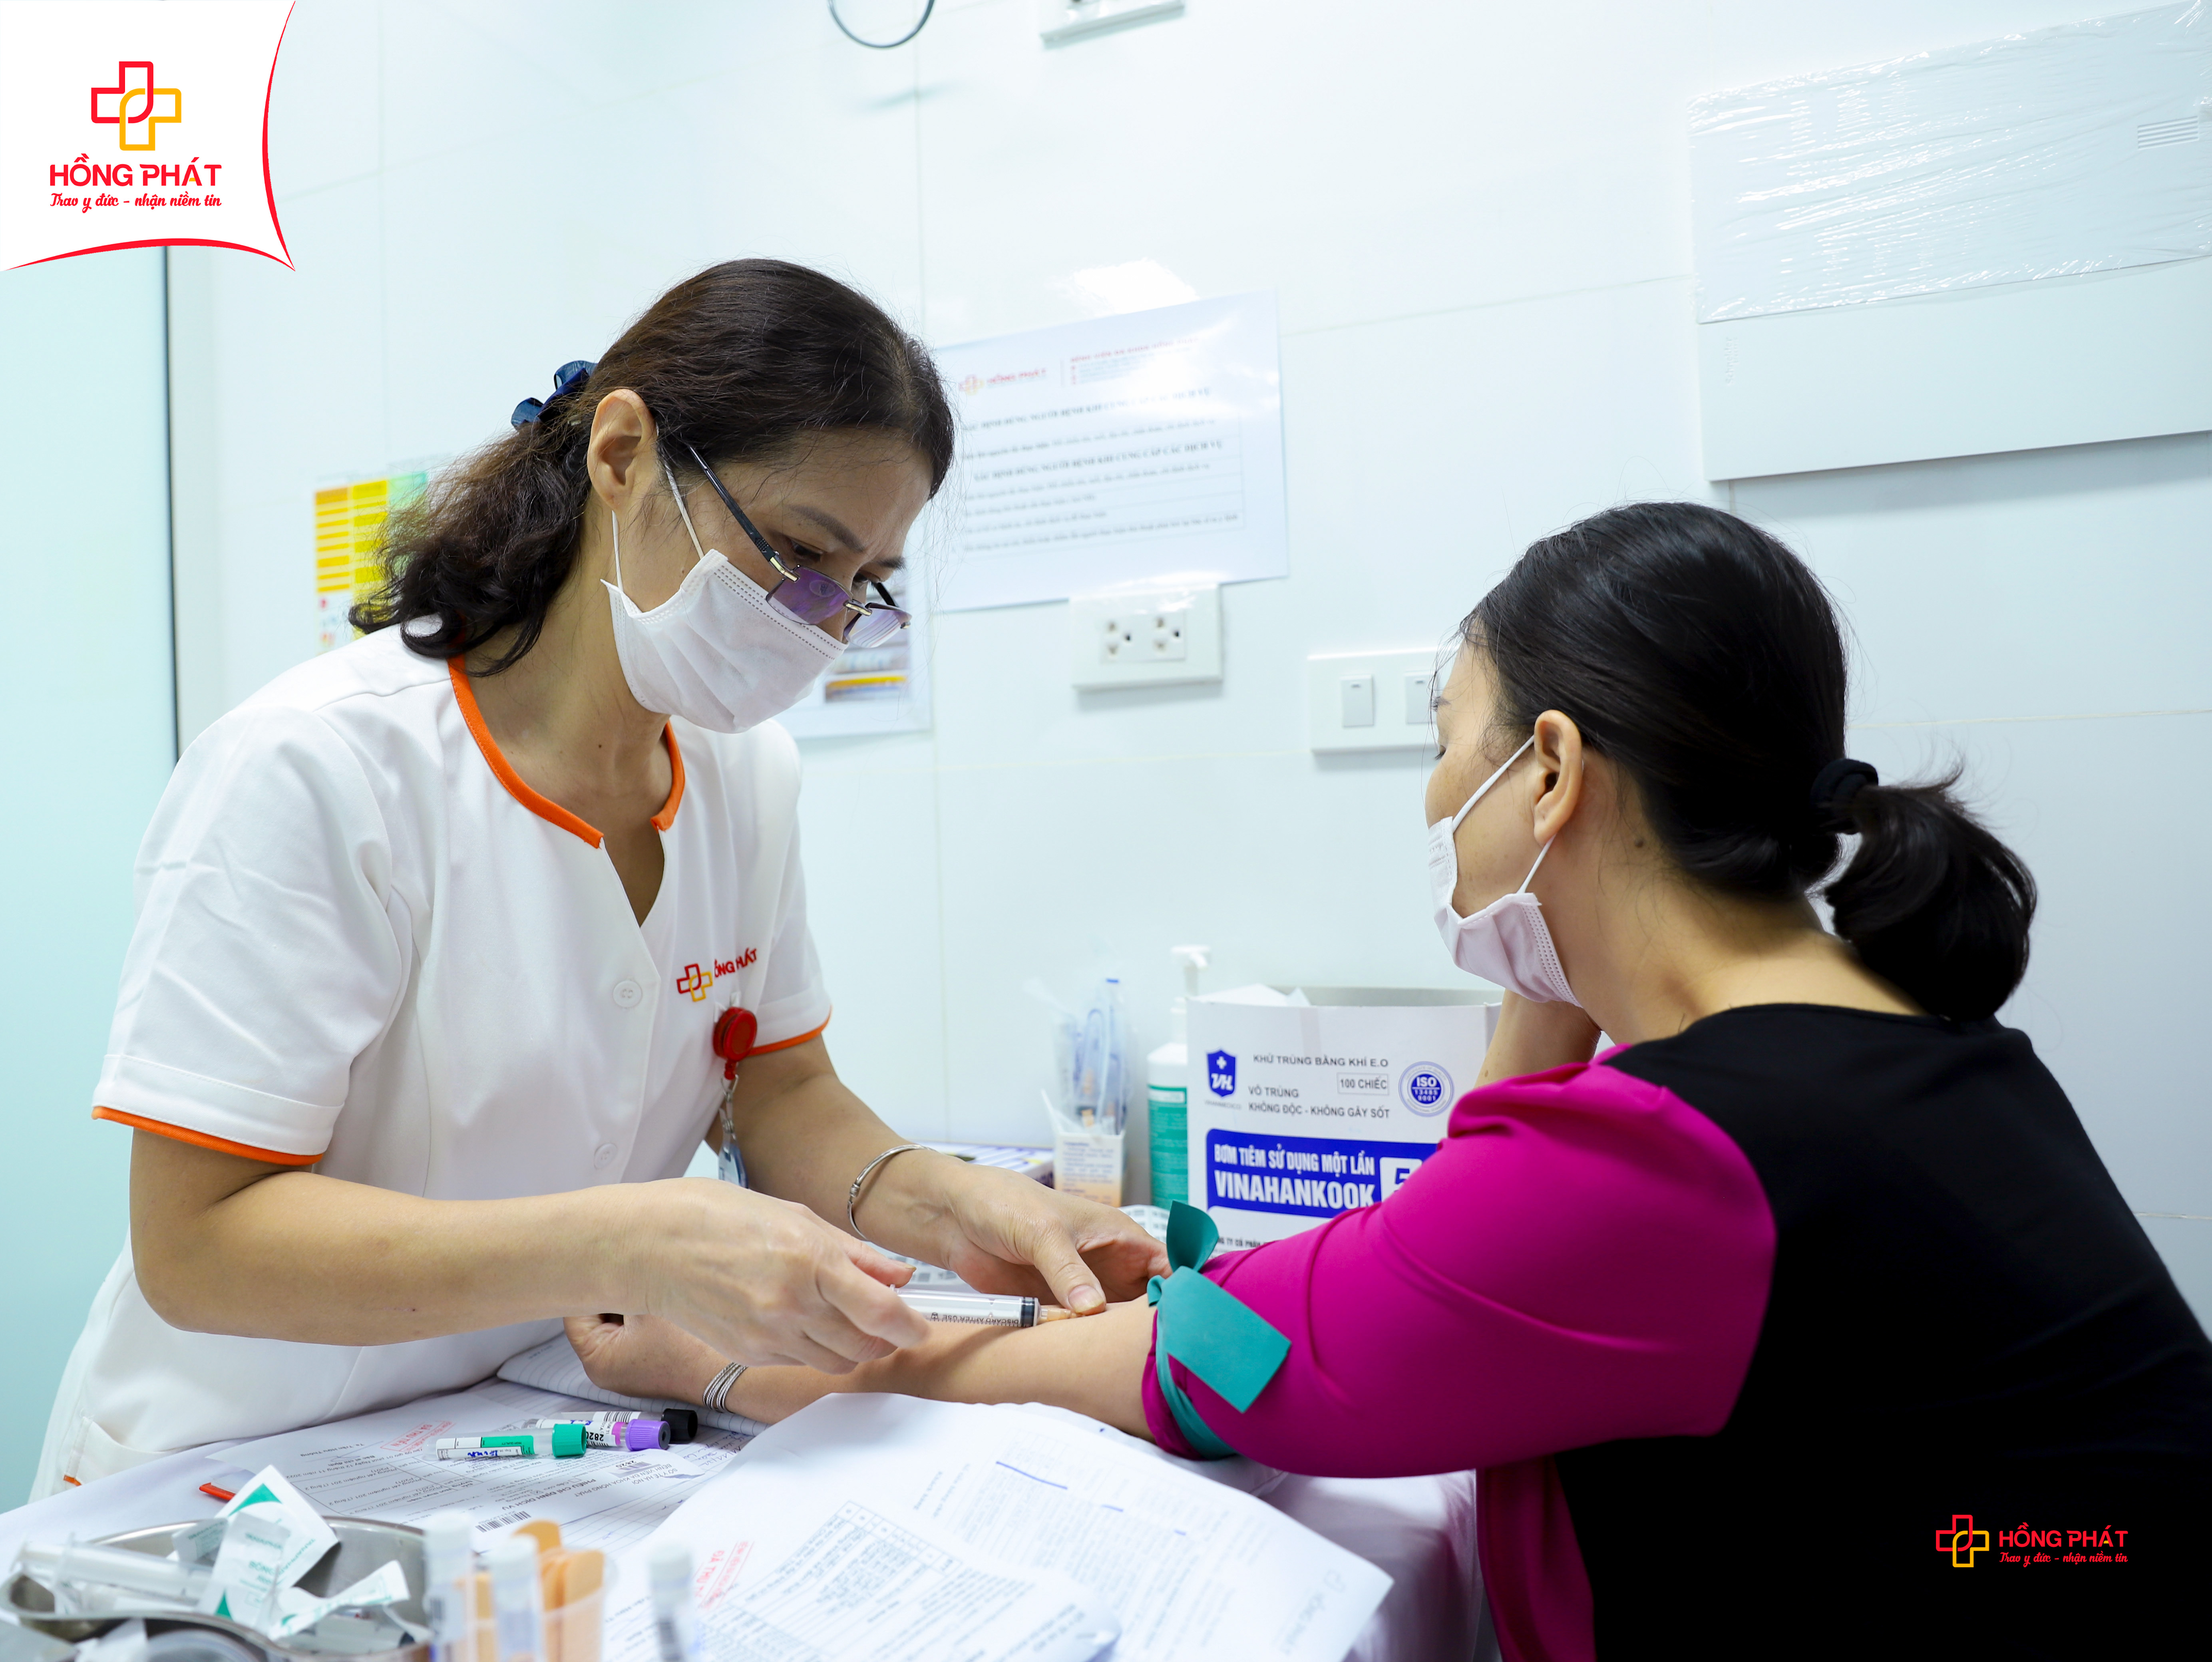 Với trên 18 năm đồng hành cùng sức khỏe người Việt, Bệnh viện Đa khoa Hồng Phát đã nhận được sự tin tưởng và chọn lựa của hàng triệu người dân trên cả nước